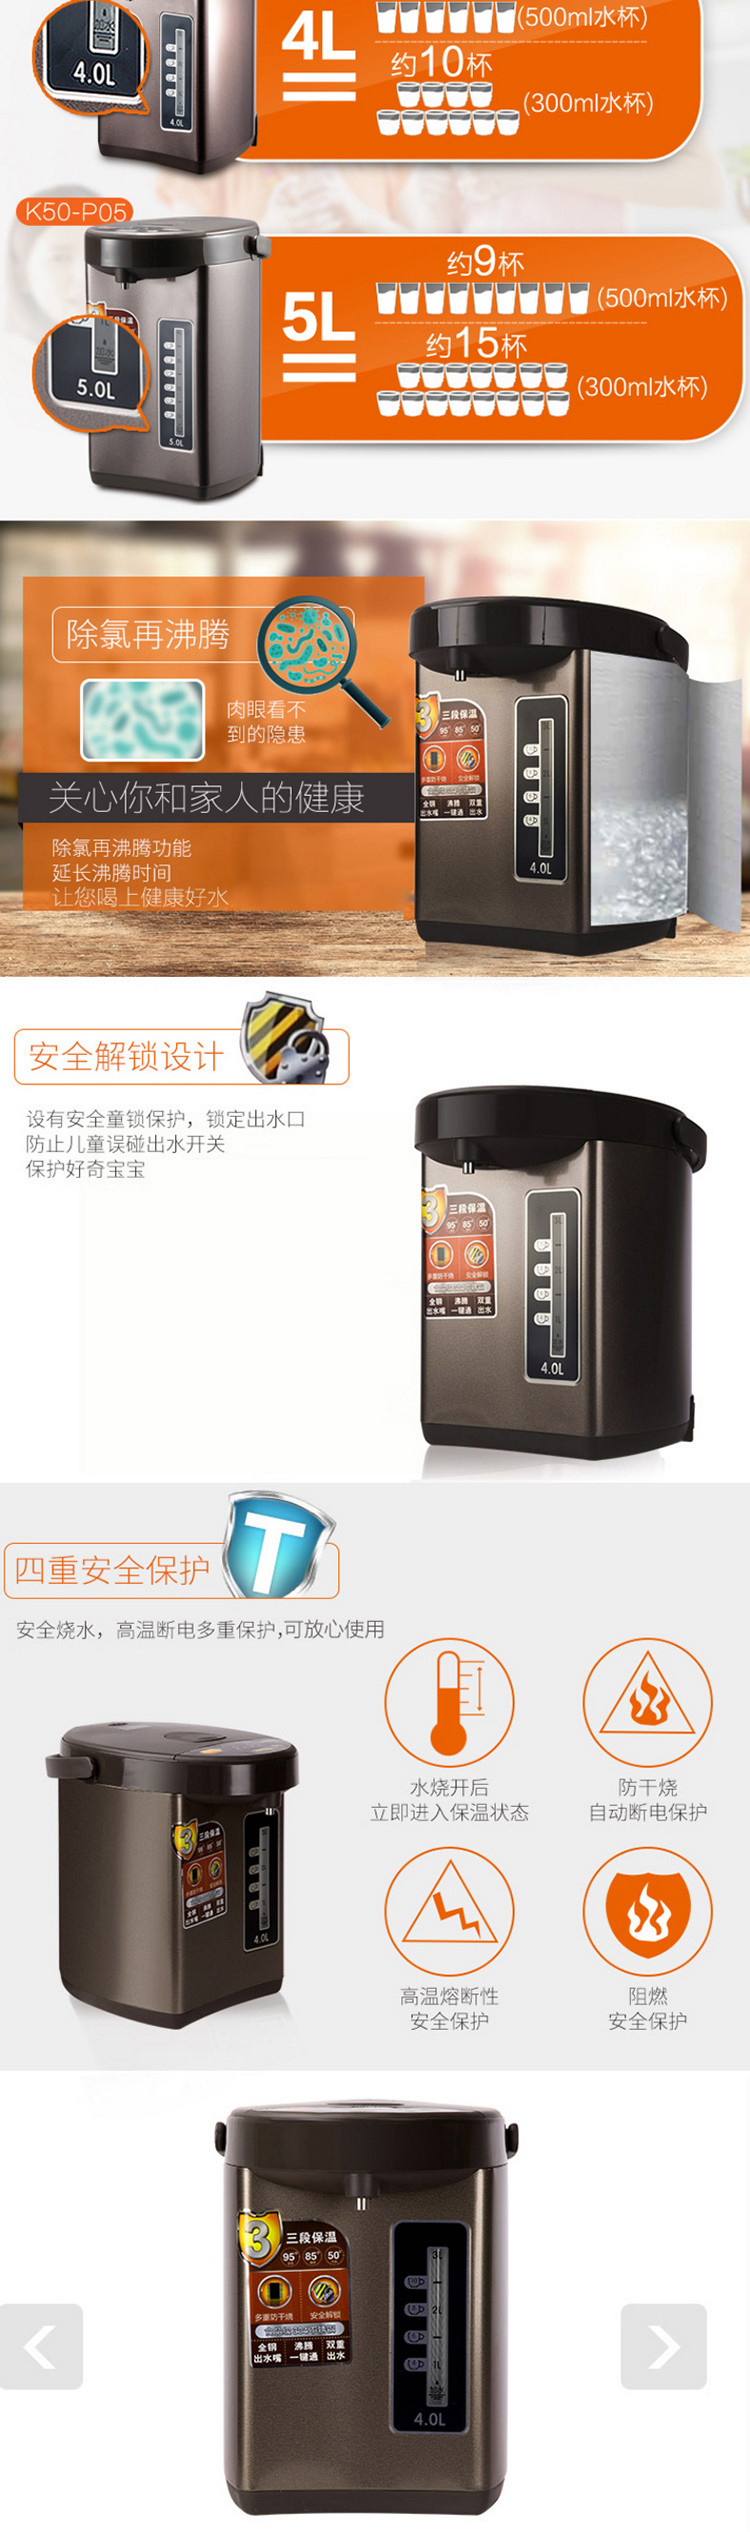 九阳Joyoung电热水瓶K40-P05不锈钢烧水壶4L